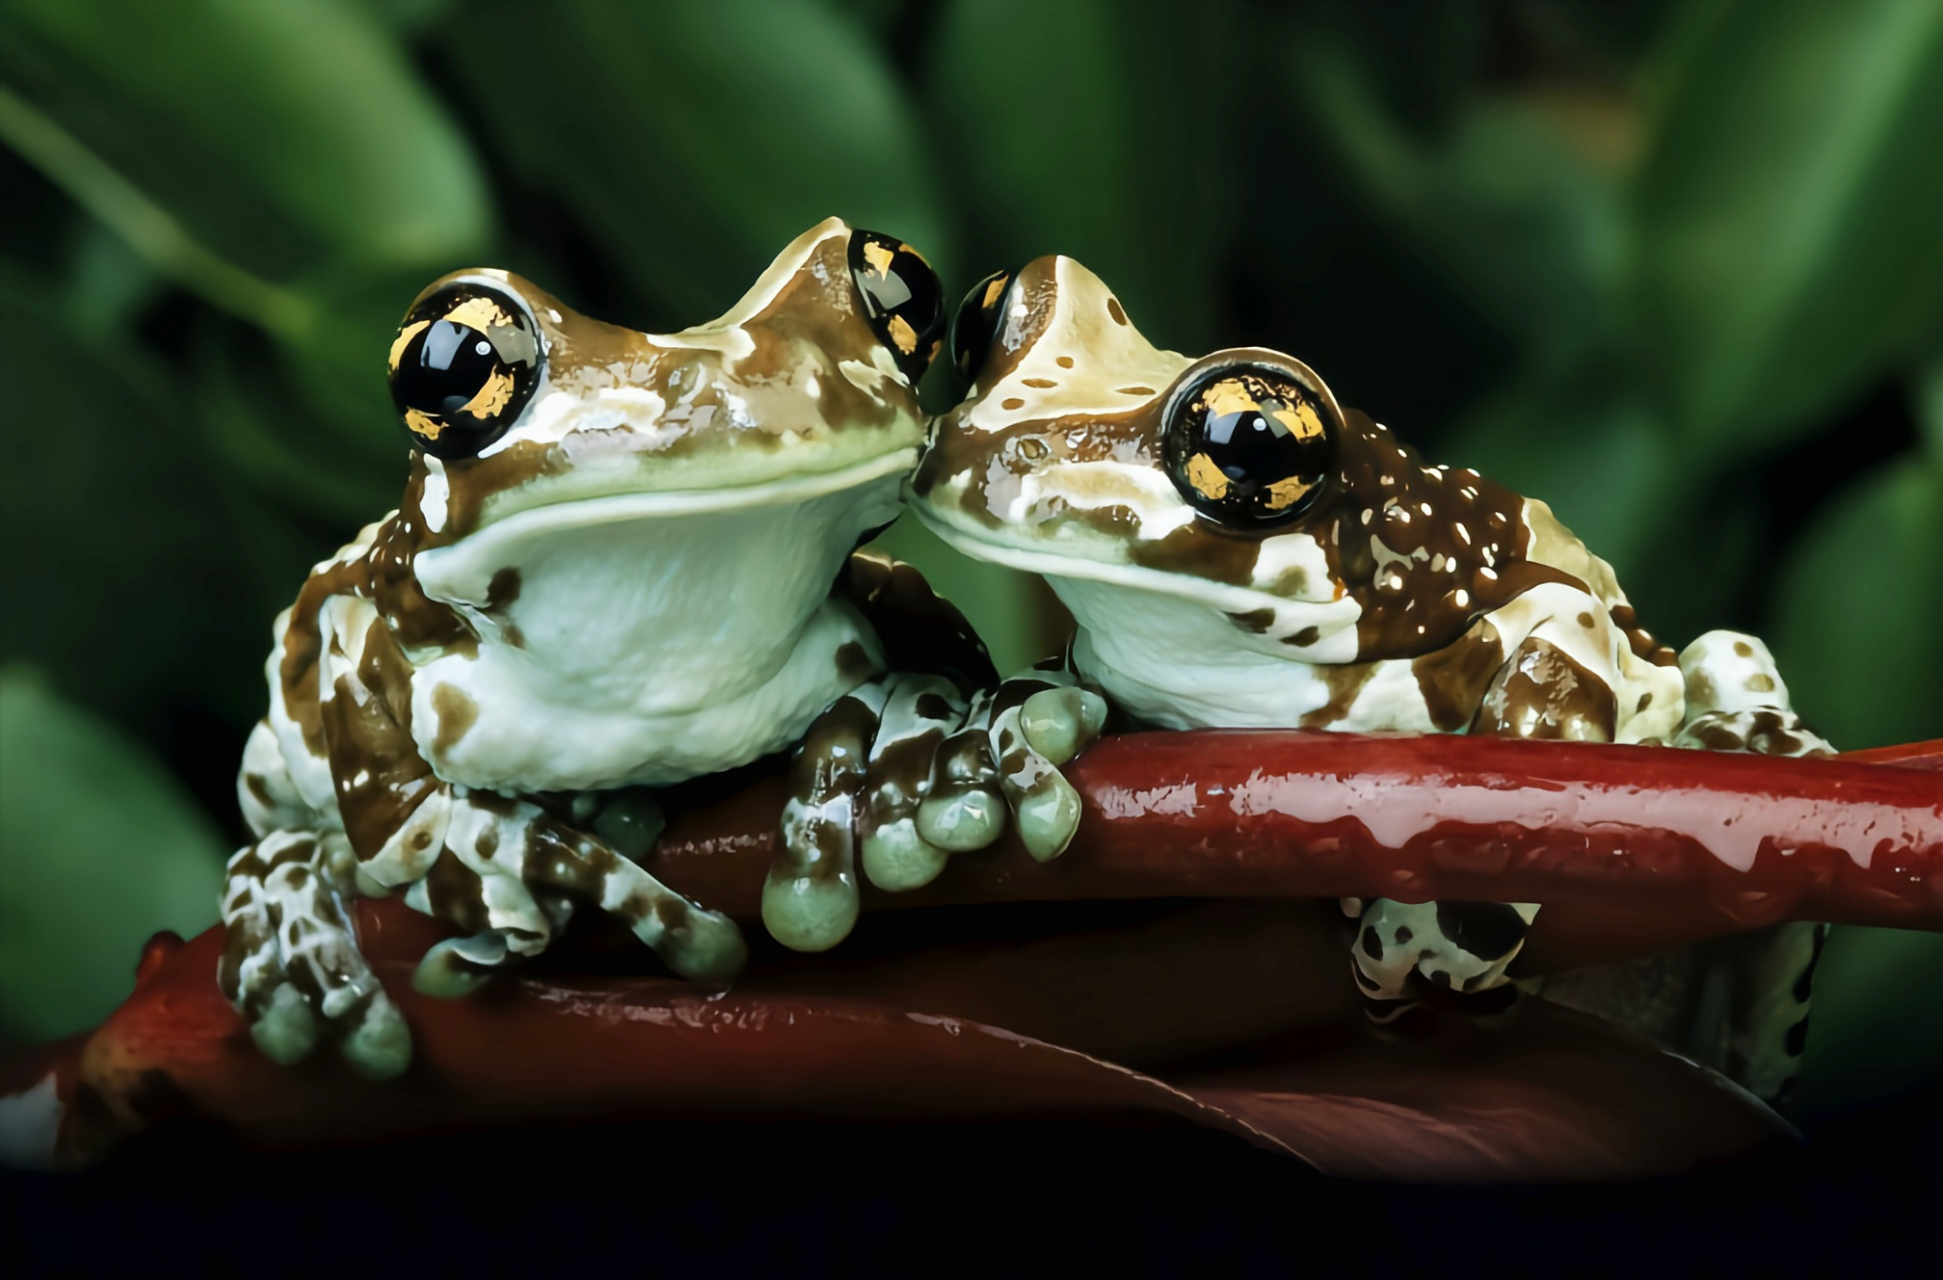 成蛙体长10厘米,属于大型树蛙,体色是独特的棕色和白色迷彩,通常栖息